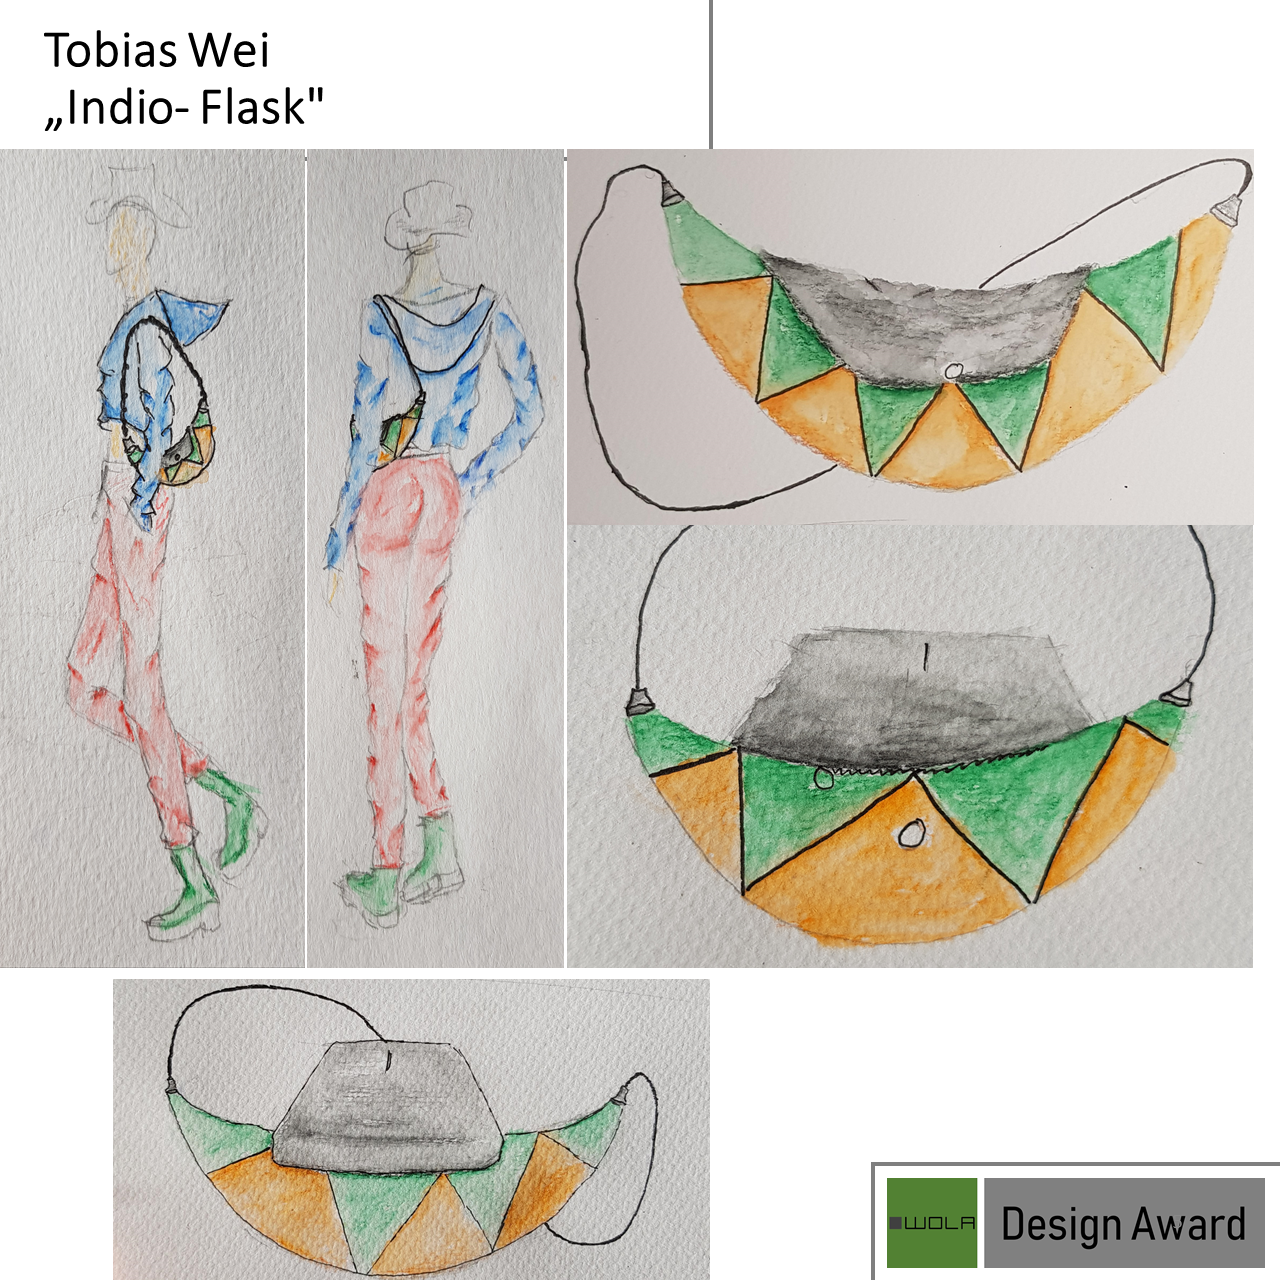 WOLA Design Award Tobias Wei Indio- Flask 1